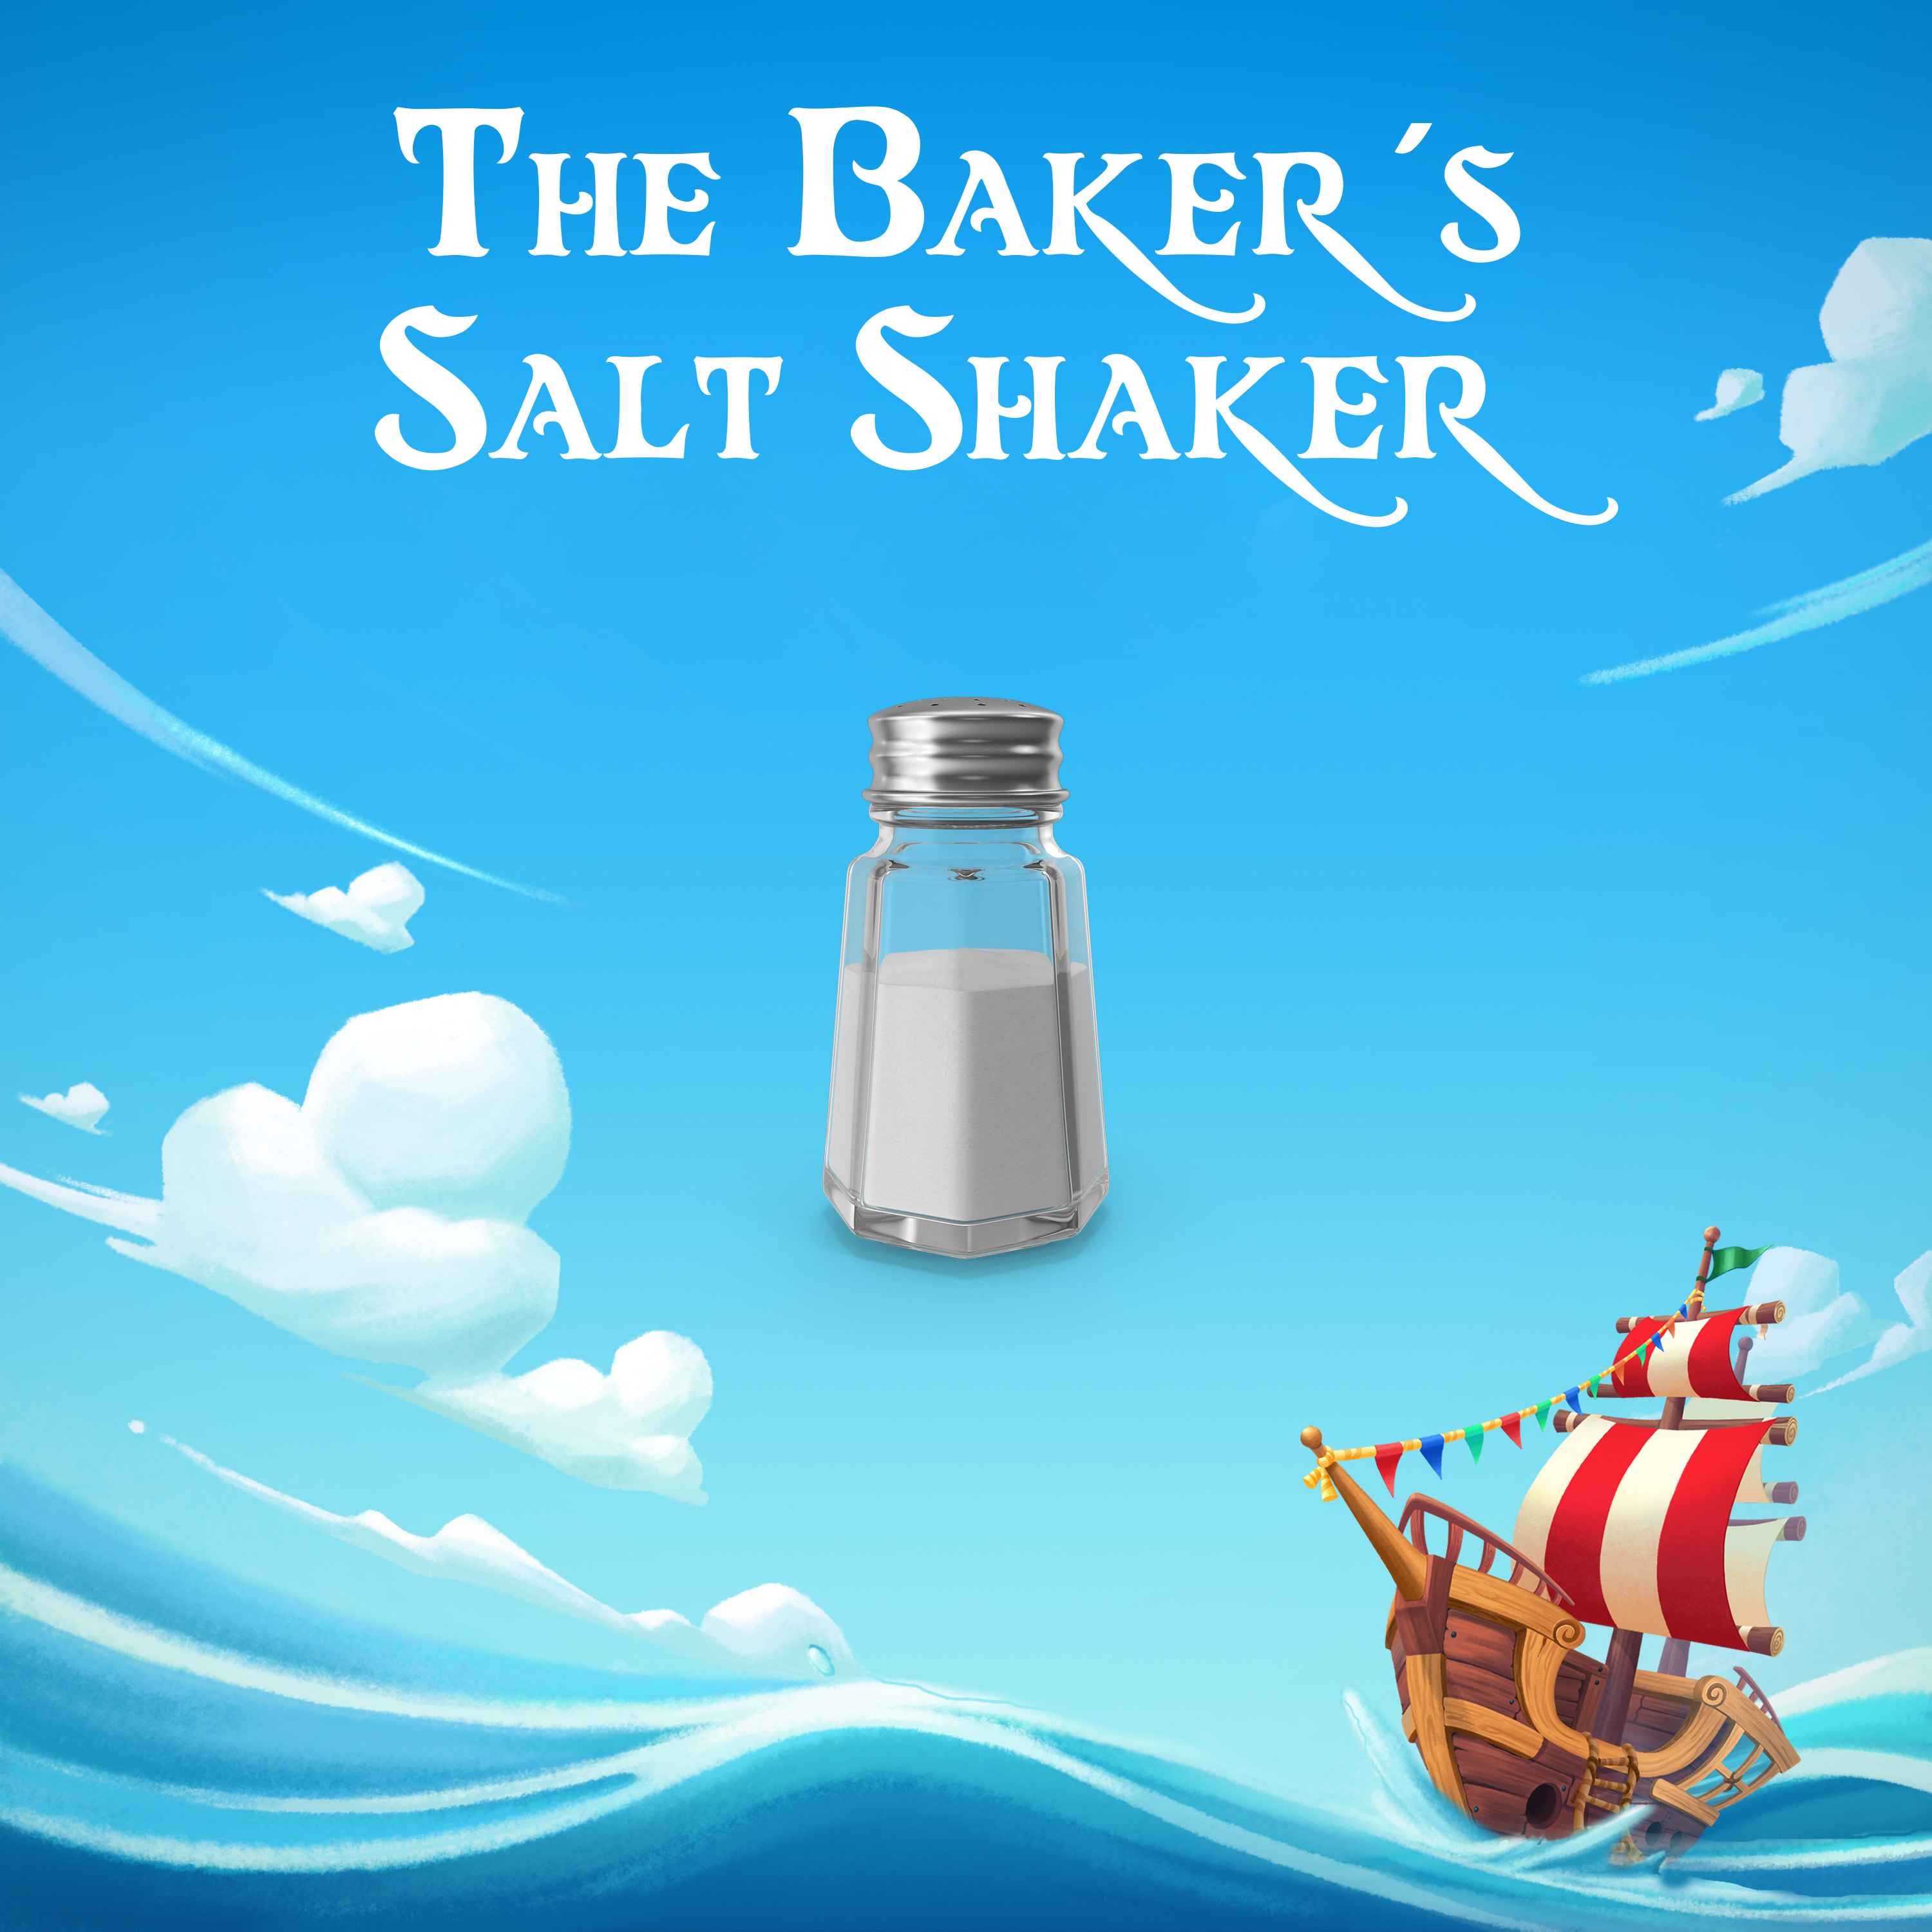 The Baker's Salt Shaker